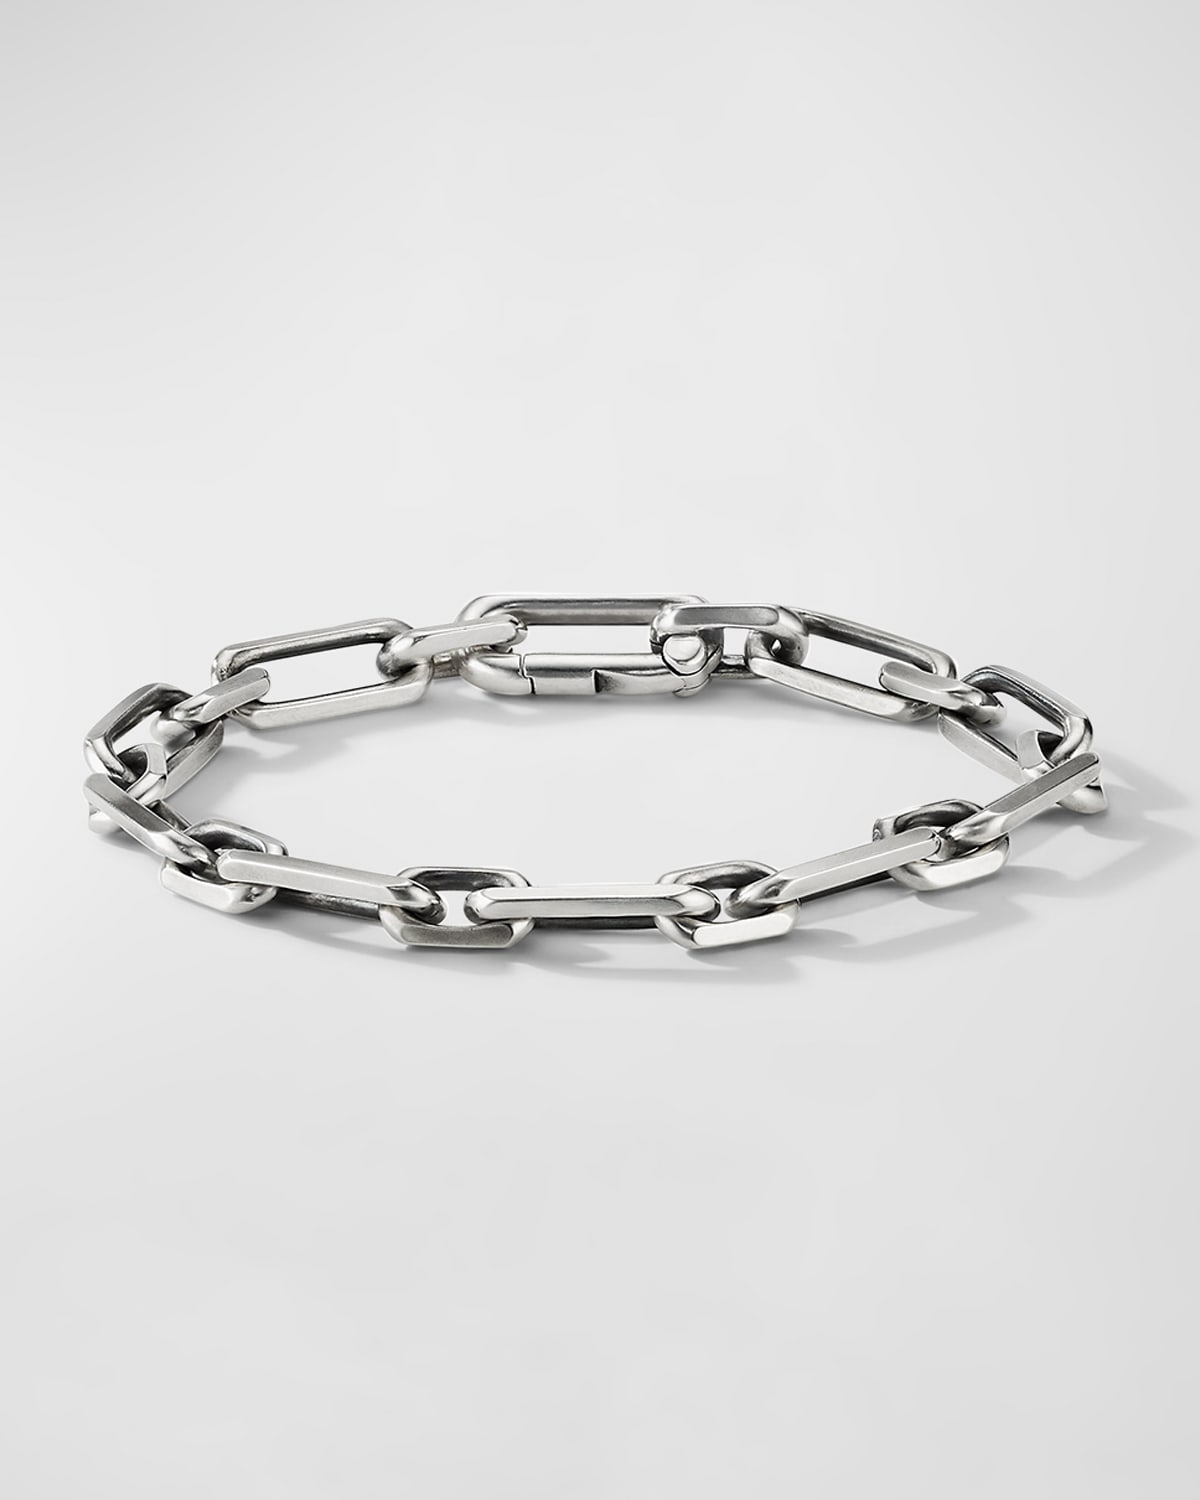 David Yurman Men's Elongated Open Link Chain Bracelet In Sterling Silver, 8mm, 5.5"l